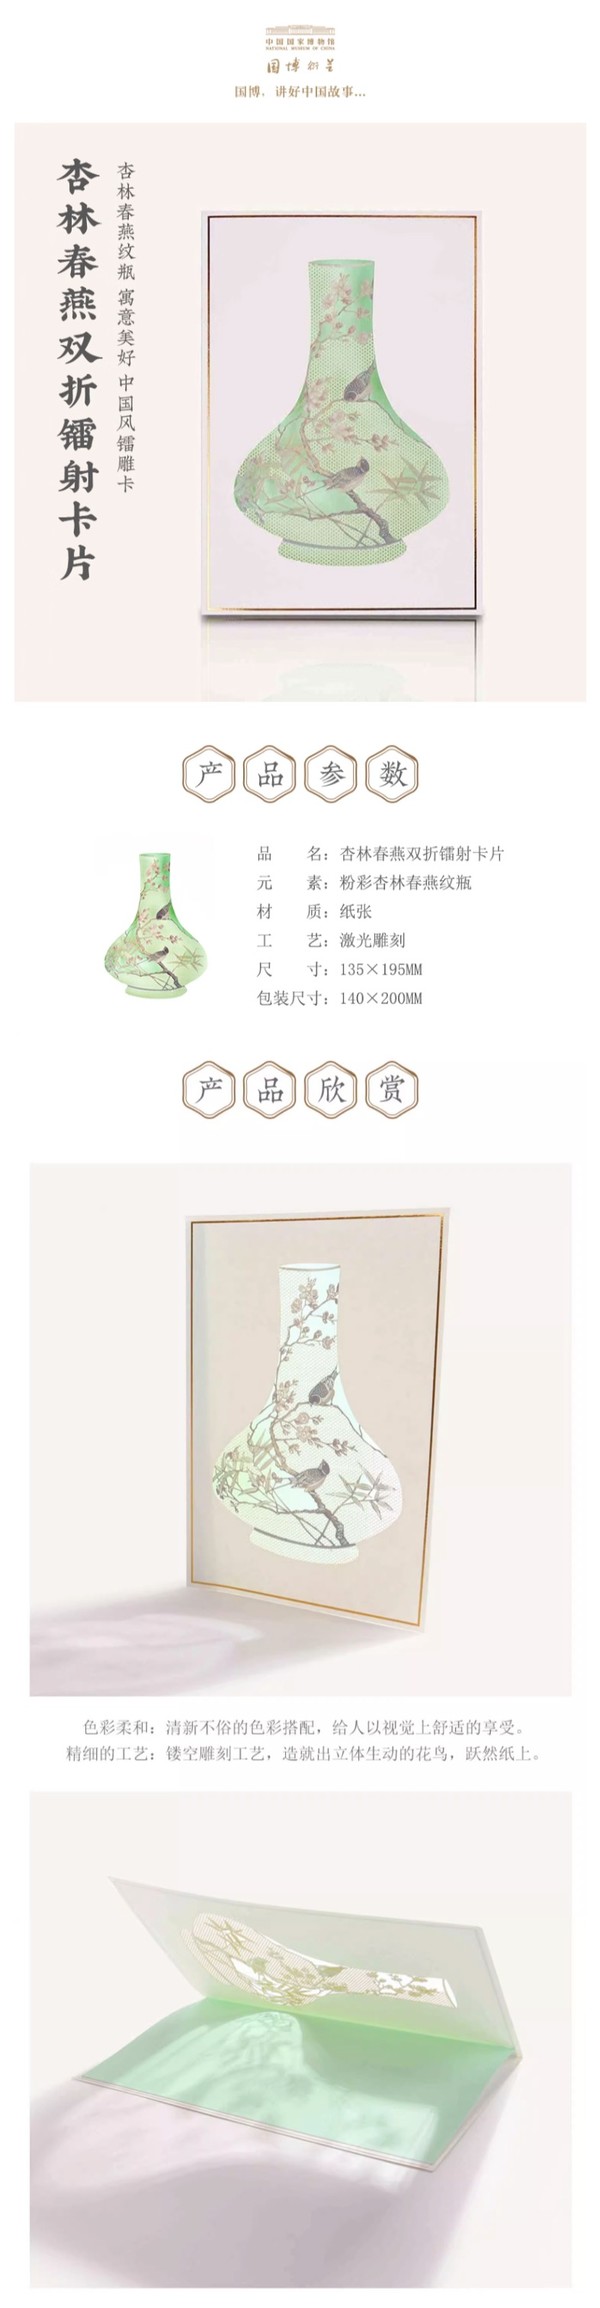 中国国家博物馆 杏林春燕镭雕卡片